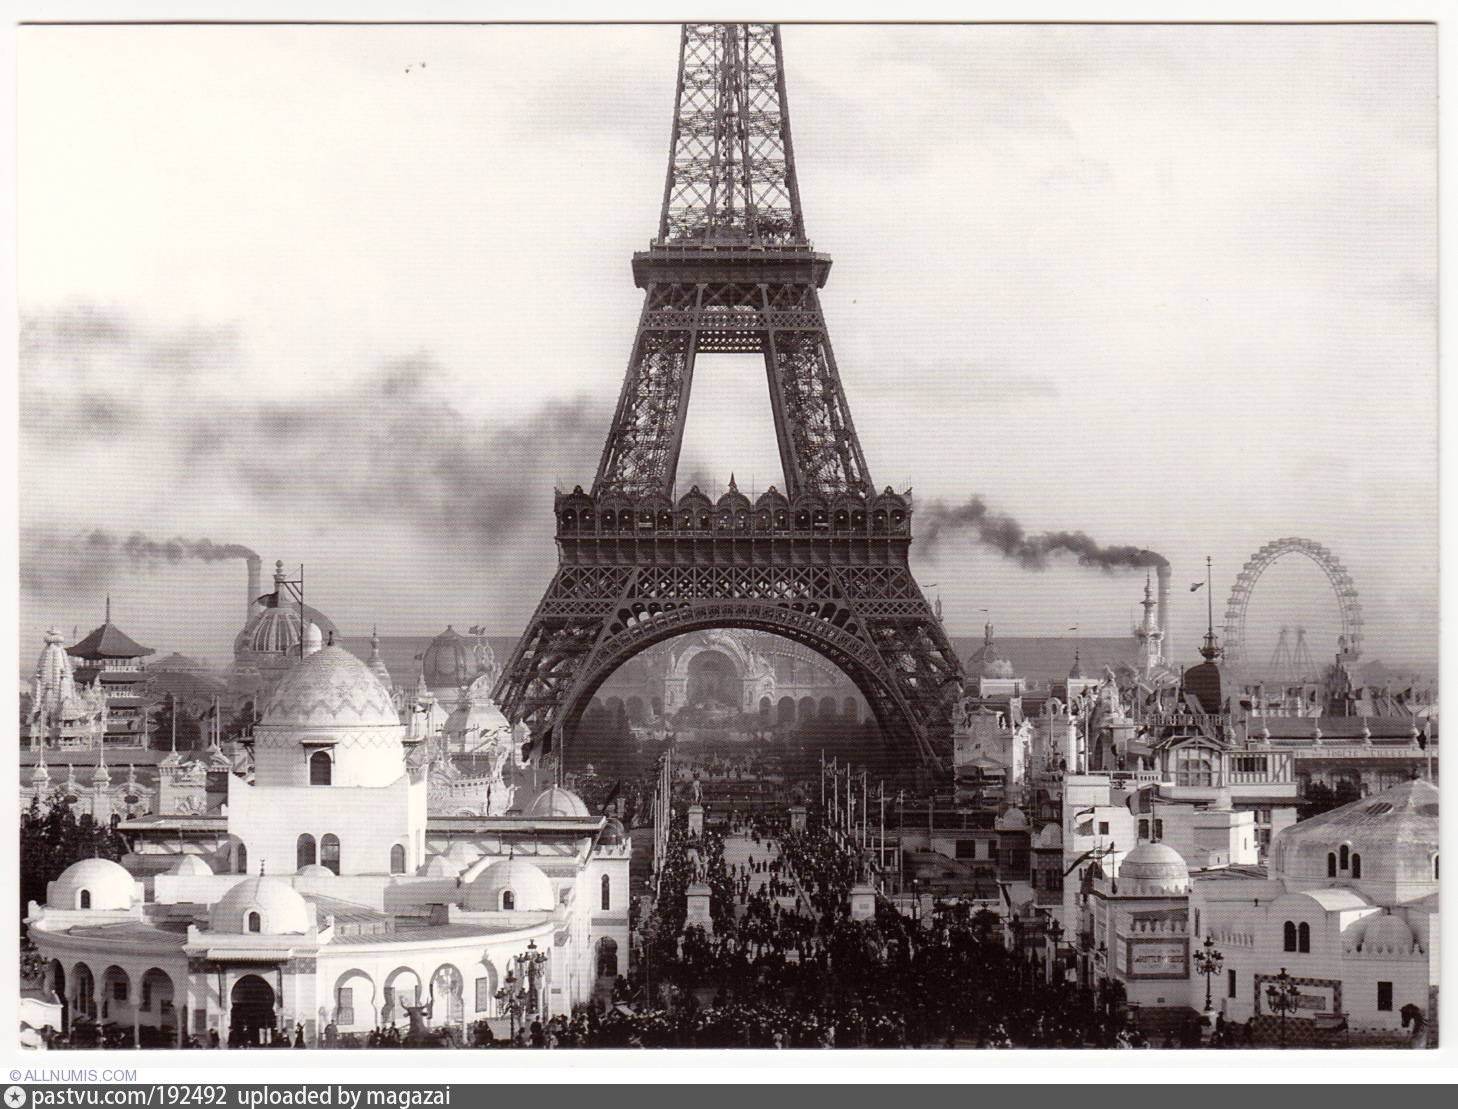 Какой год в париже. Гюстав Эйфель. Эйфелева башня в Париже. 1887—1889. Эйфелева башня в Париже 1889 год. Эйфелева башня 19 век. Франция 19 век Эйфелева башня.